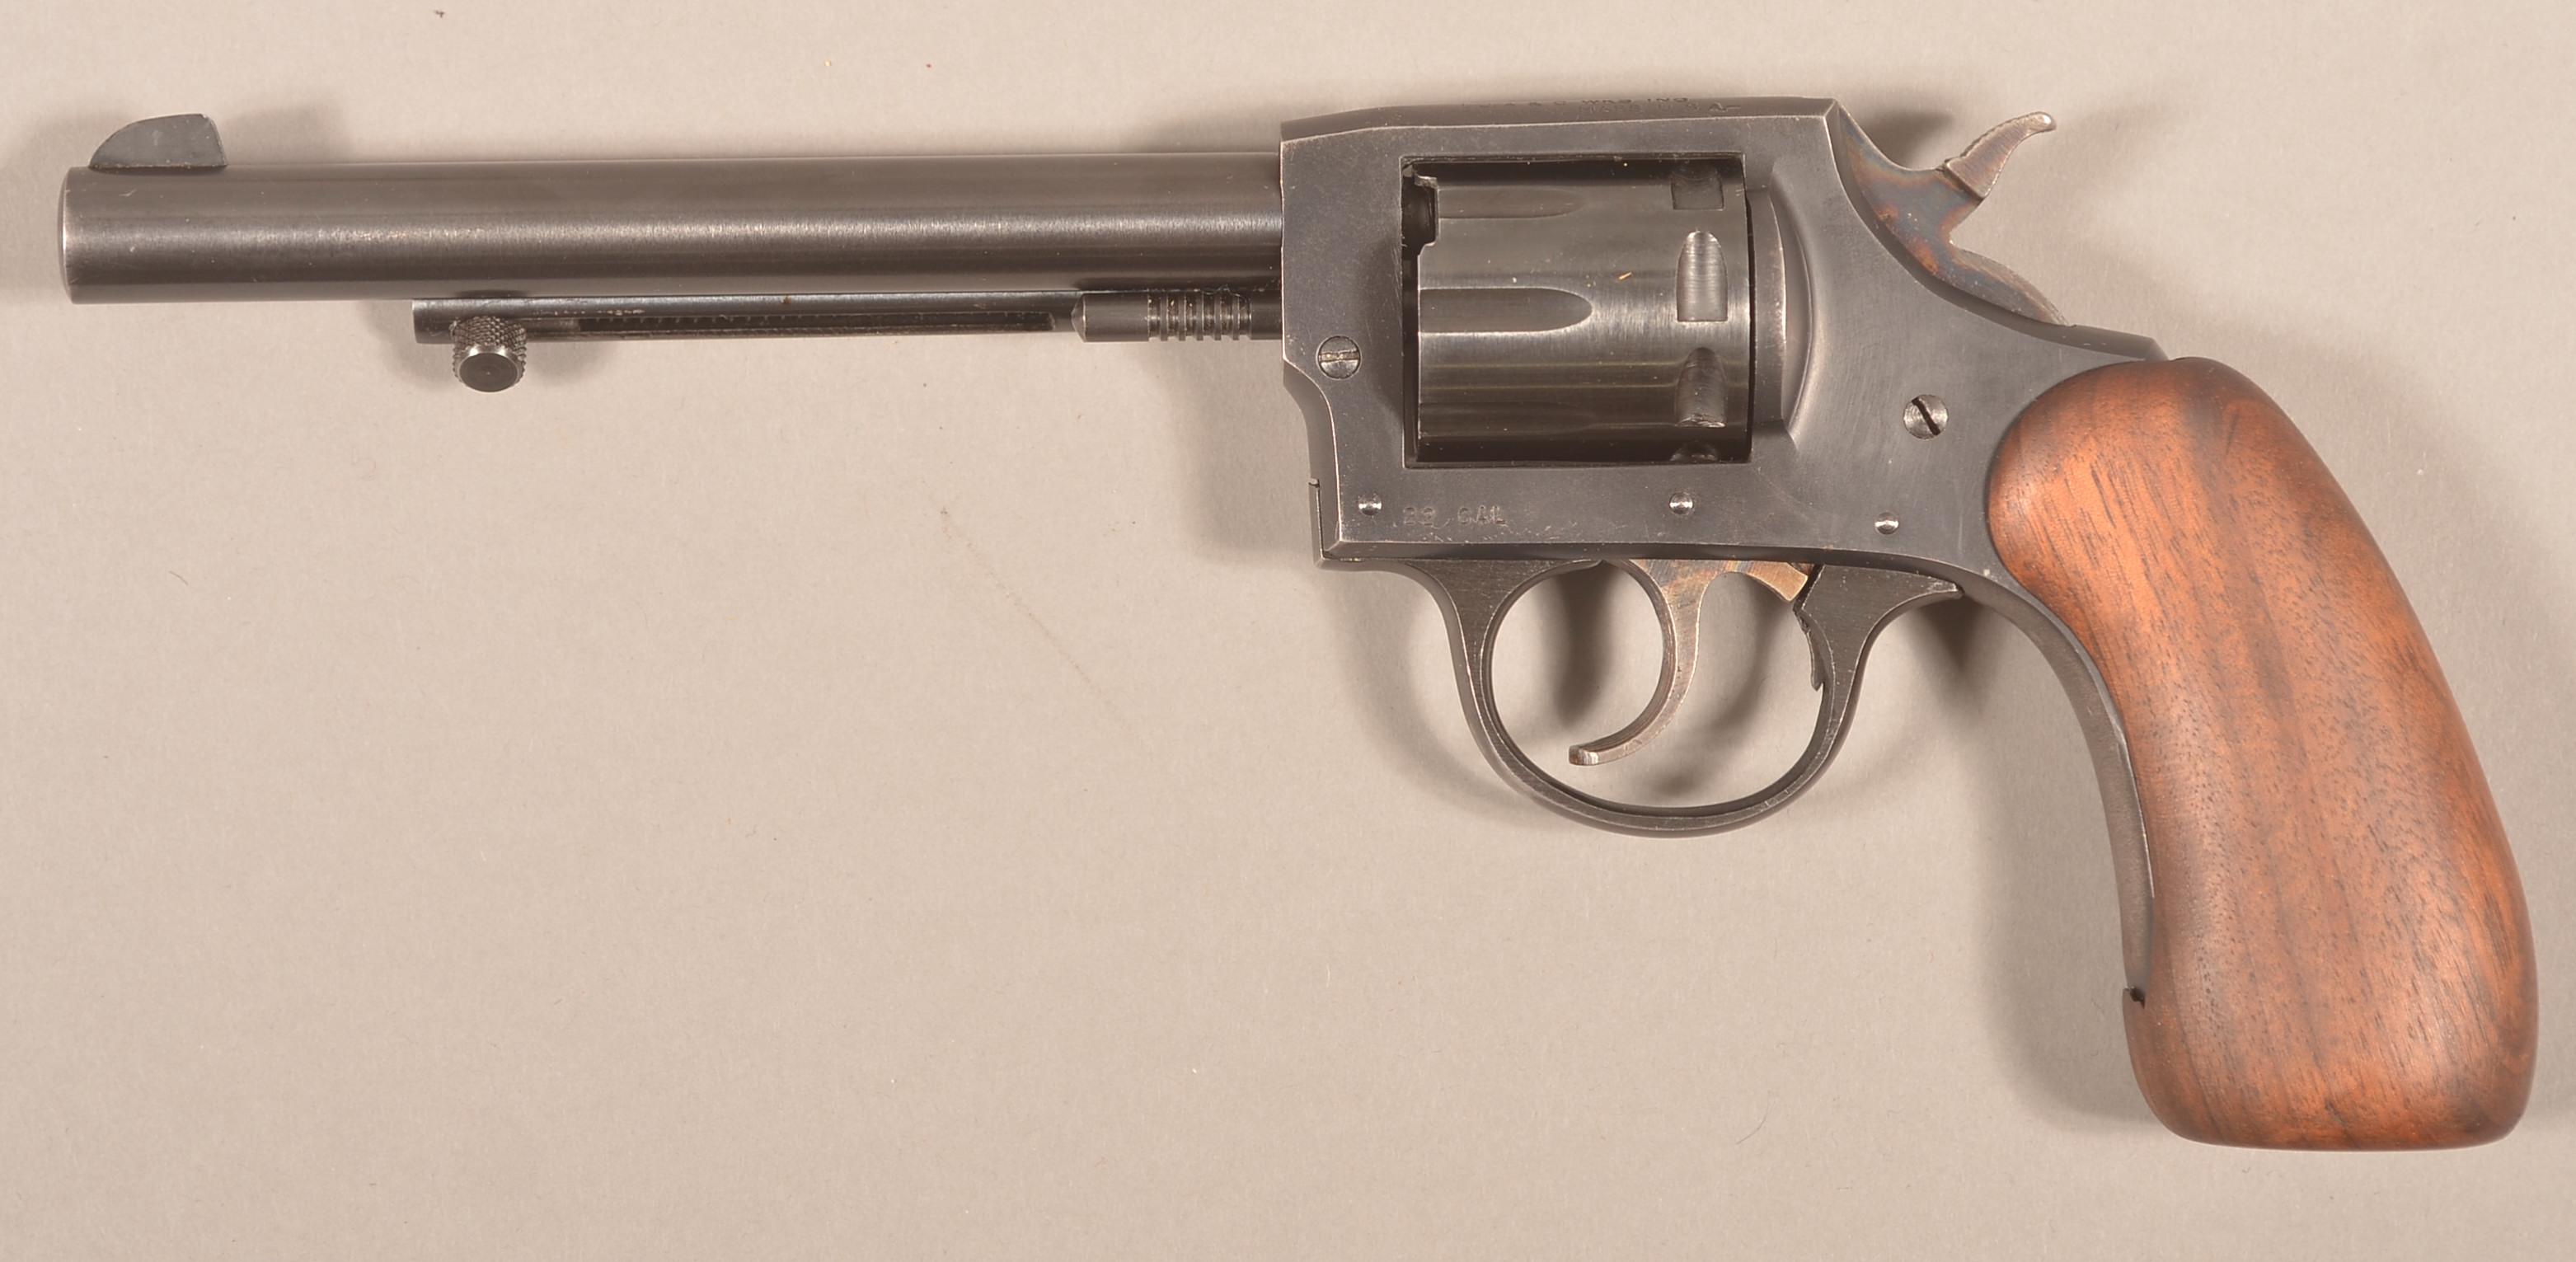 Iver Johnson mod. 50 "Sidewinder" .22 revolver